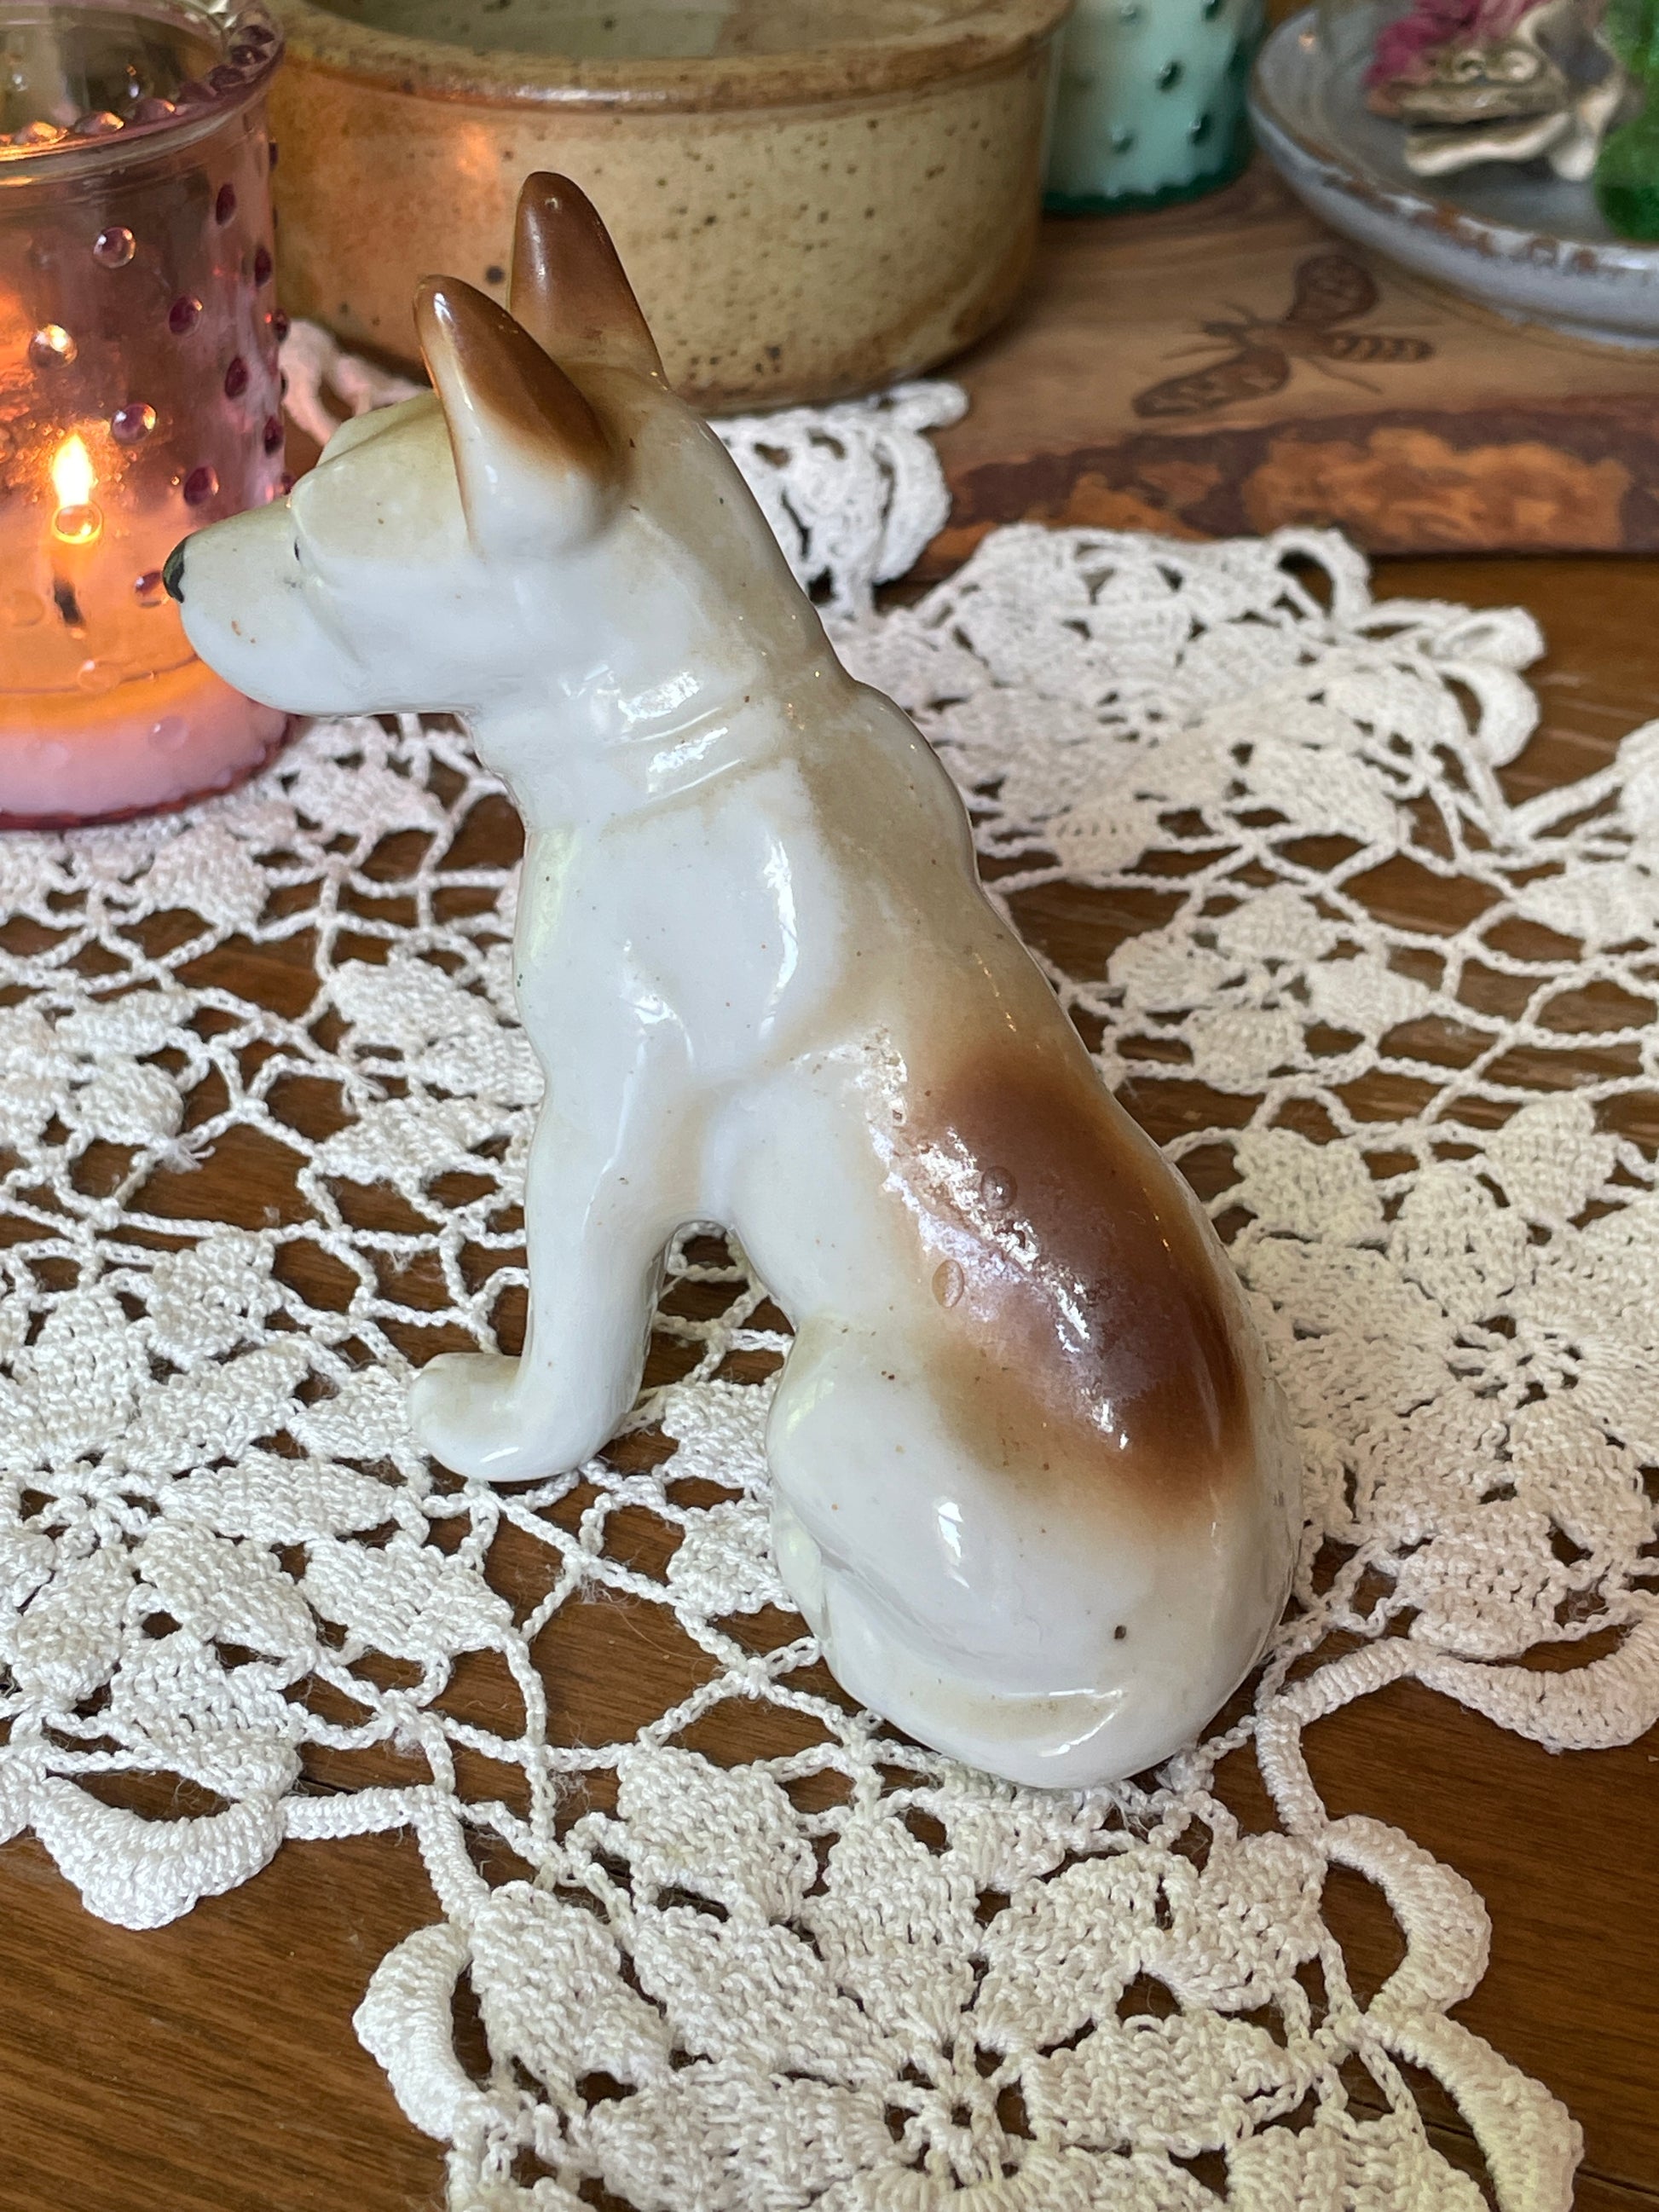 Vintage Terrier Dog Figuring| Large Porcelain Dog Figurine